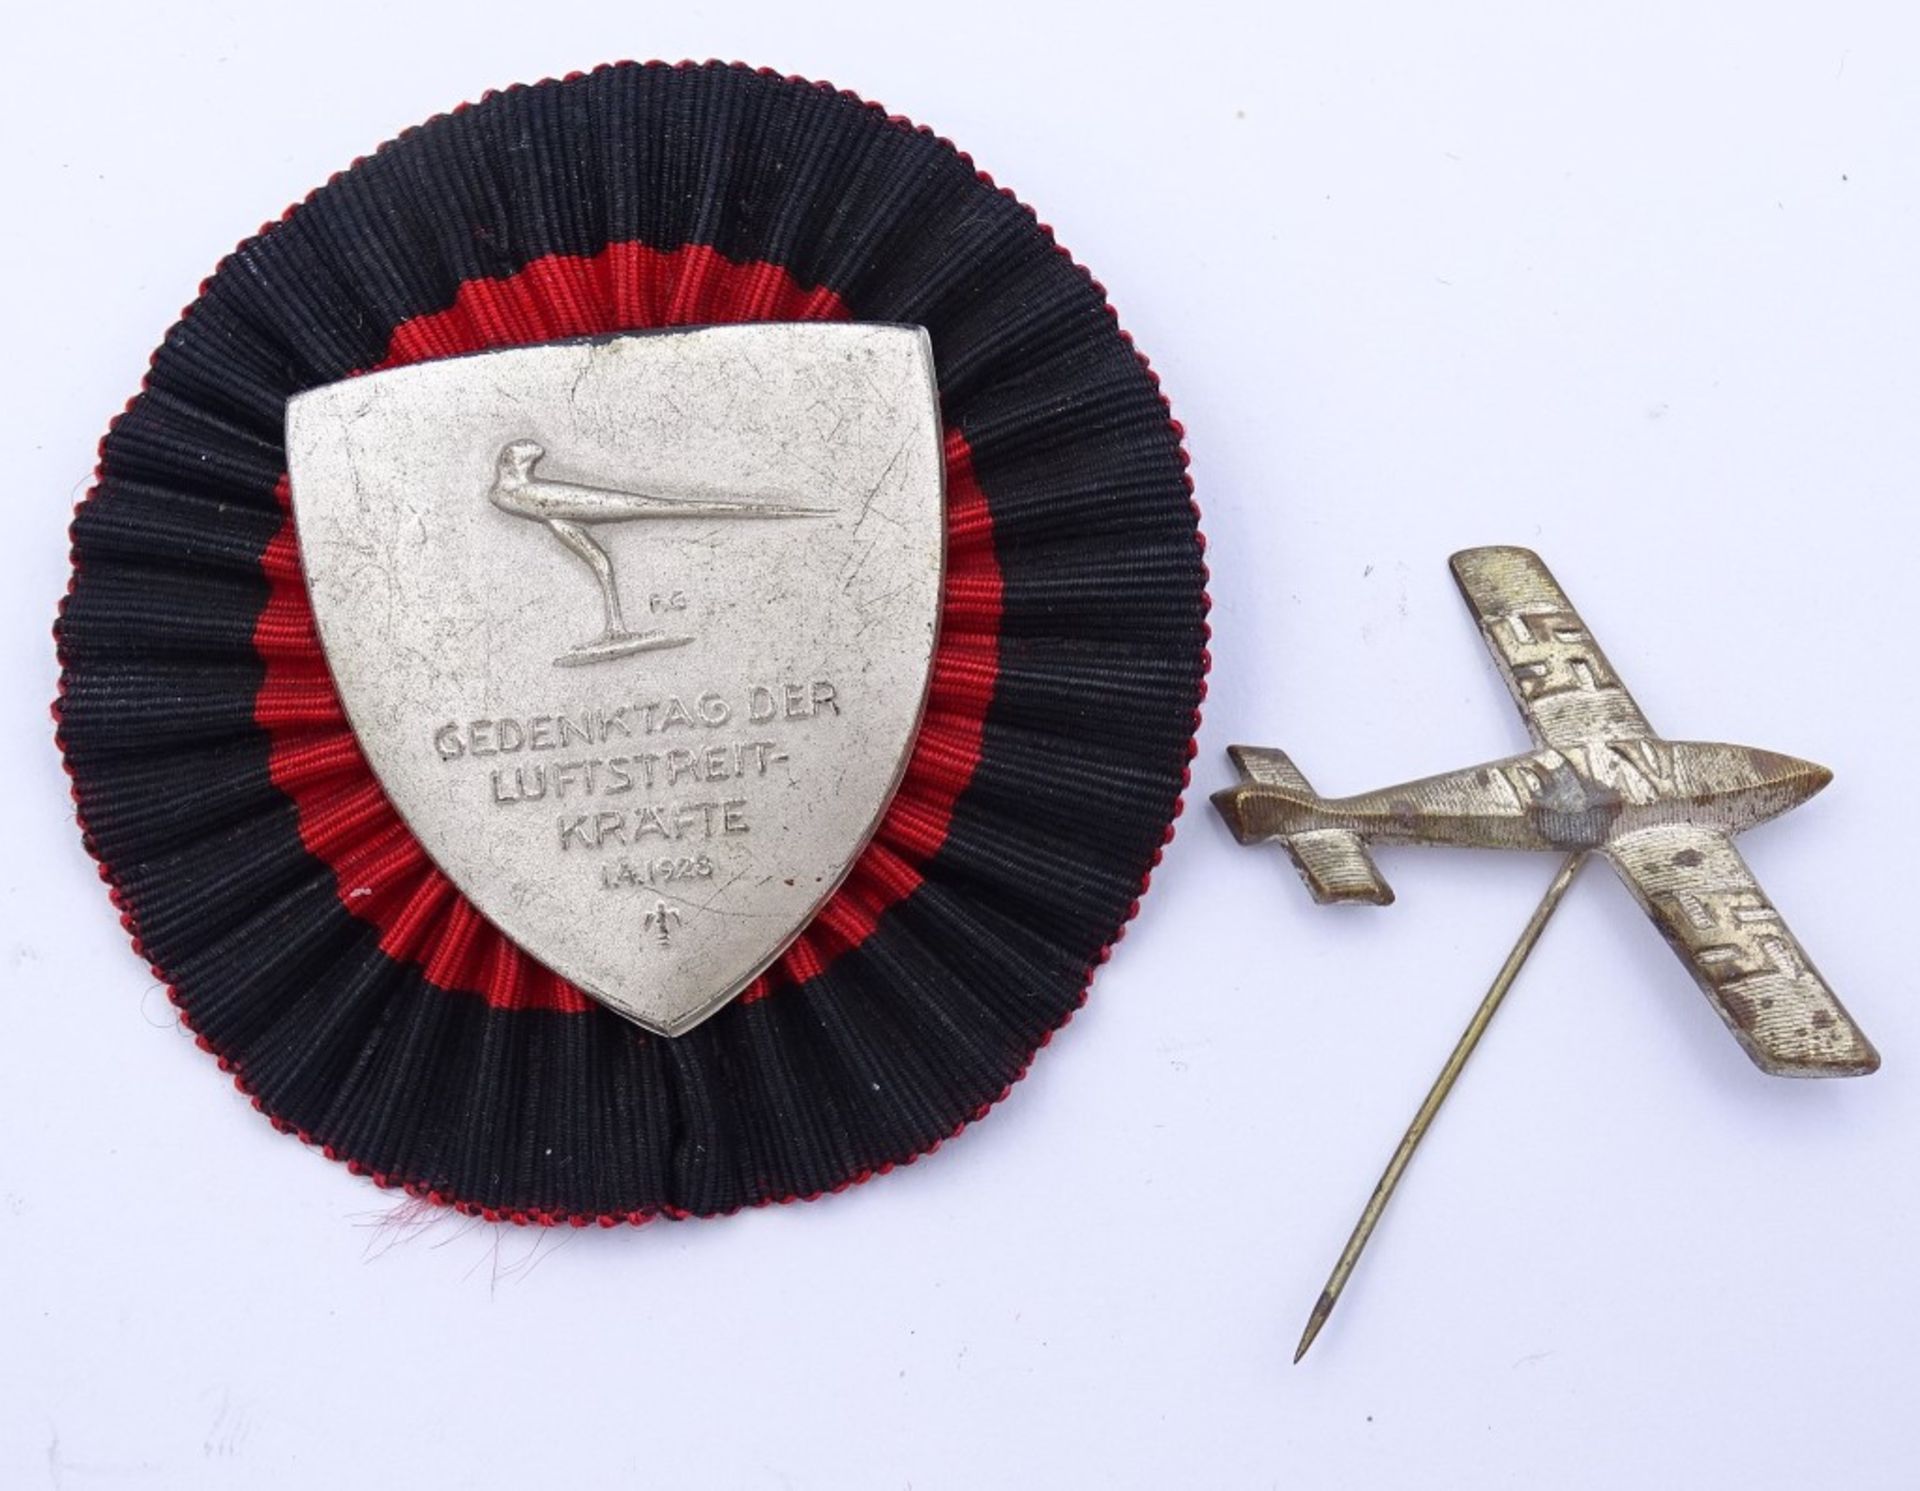 Abzeichen 1928 "Gedenktag der Luftstreitkräfte" und Nadel DLV mit Hoheitszeichen